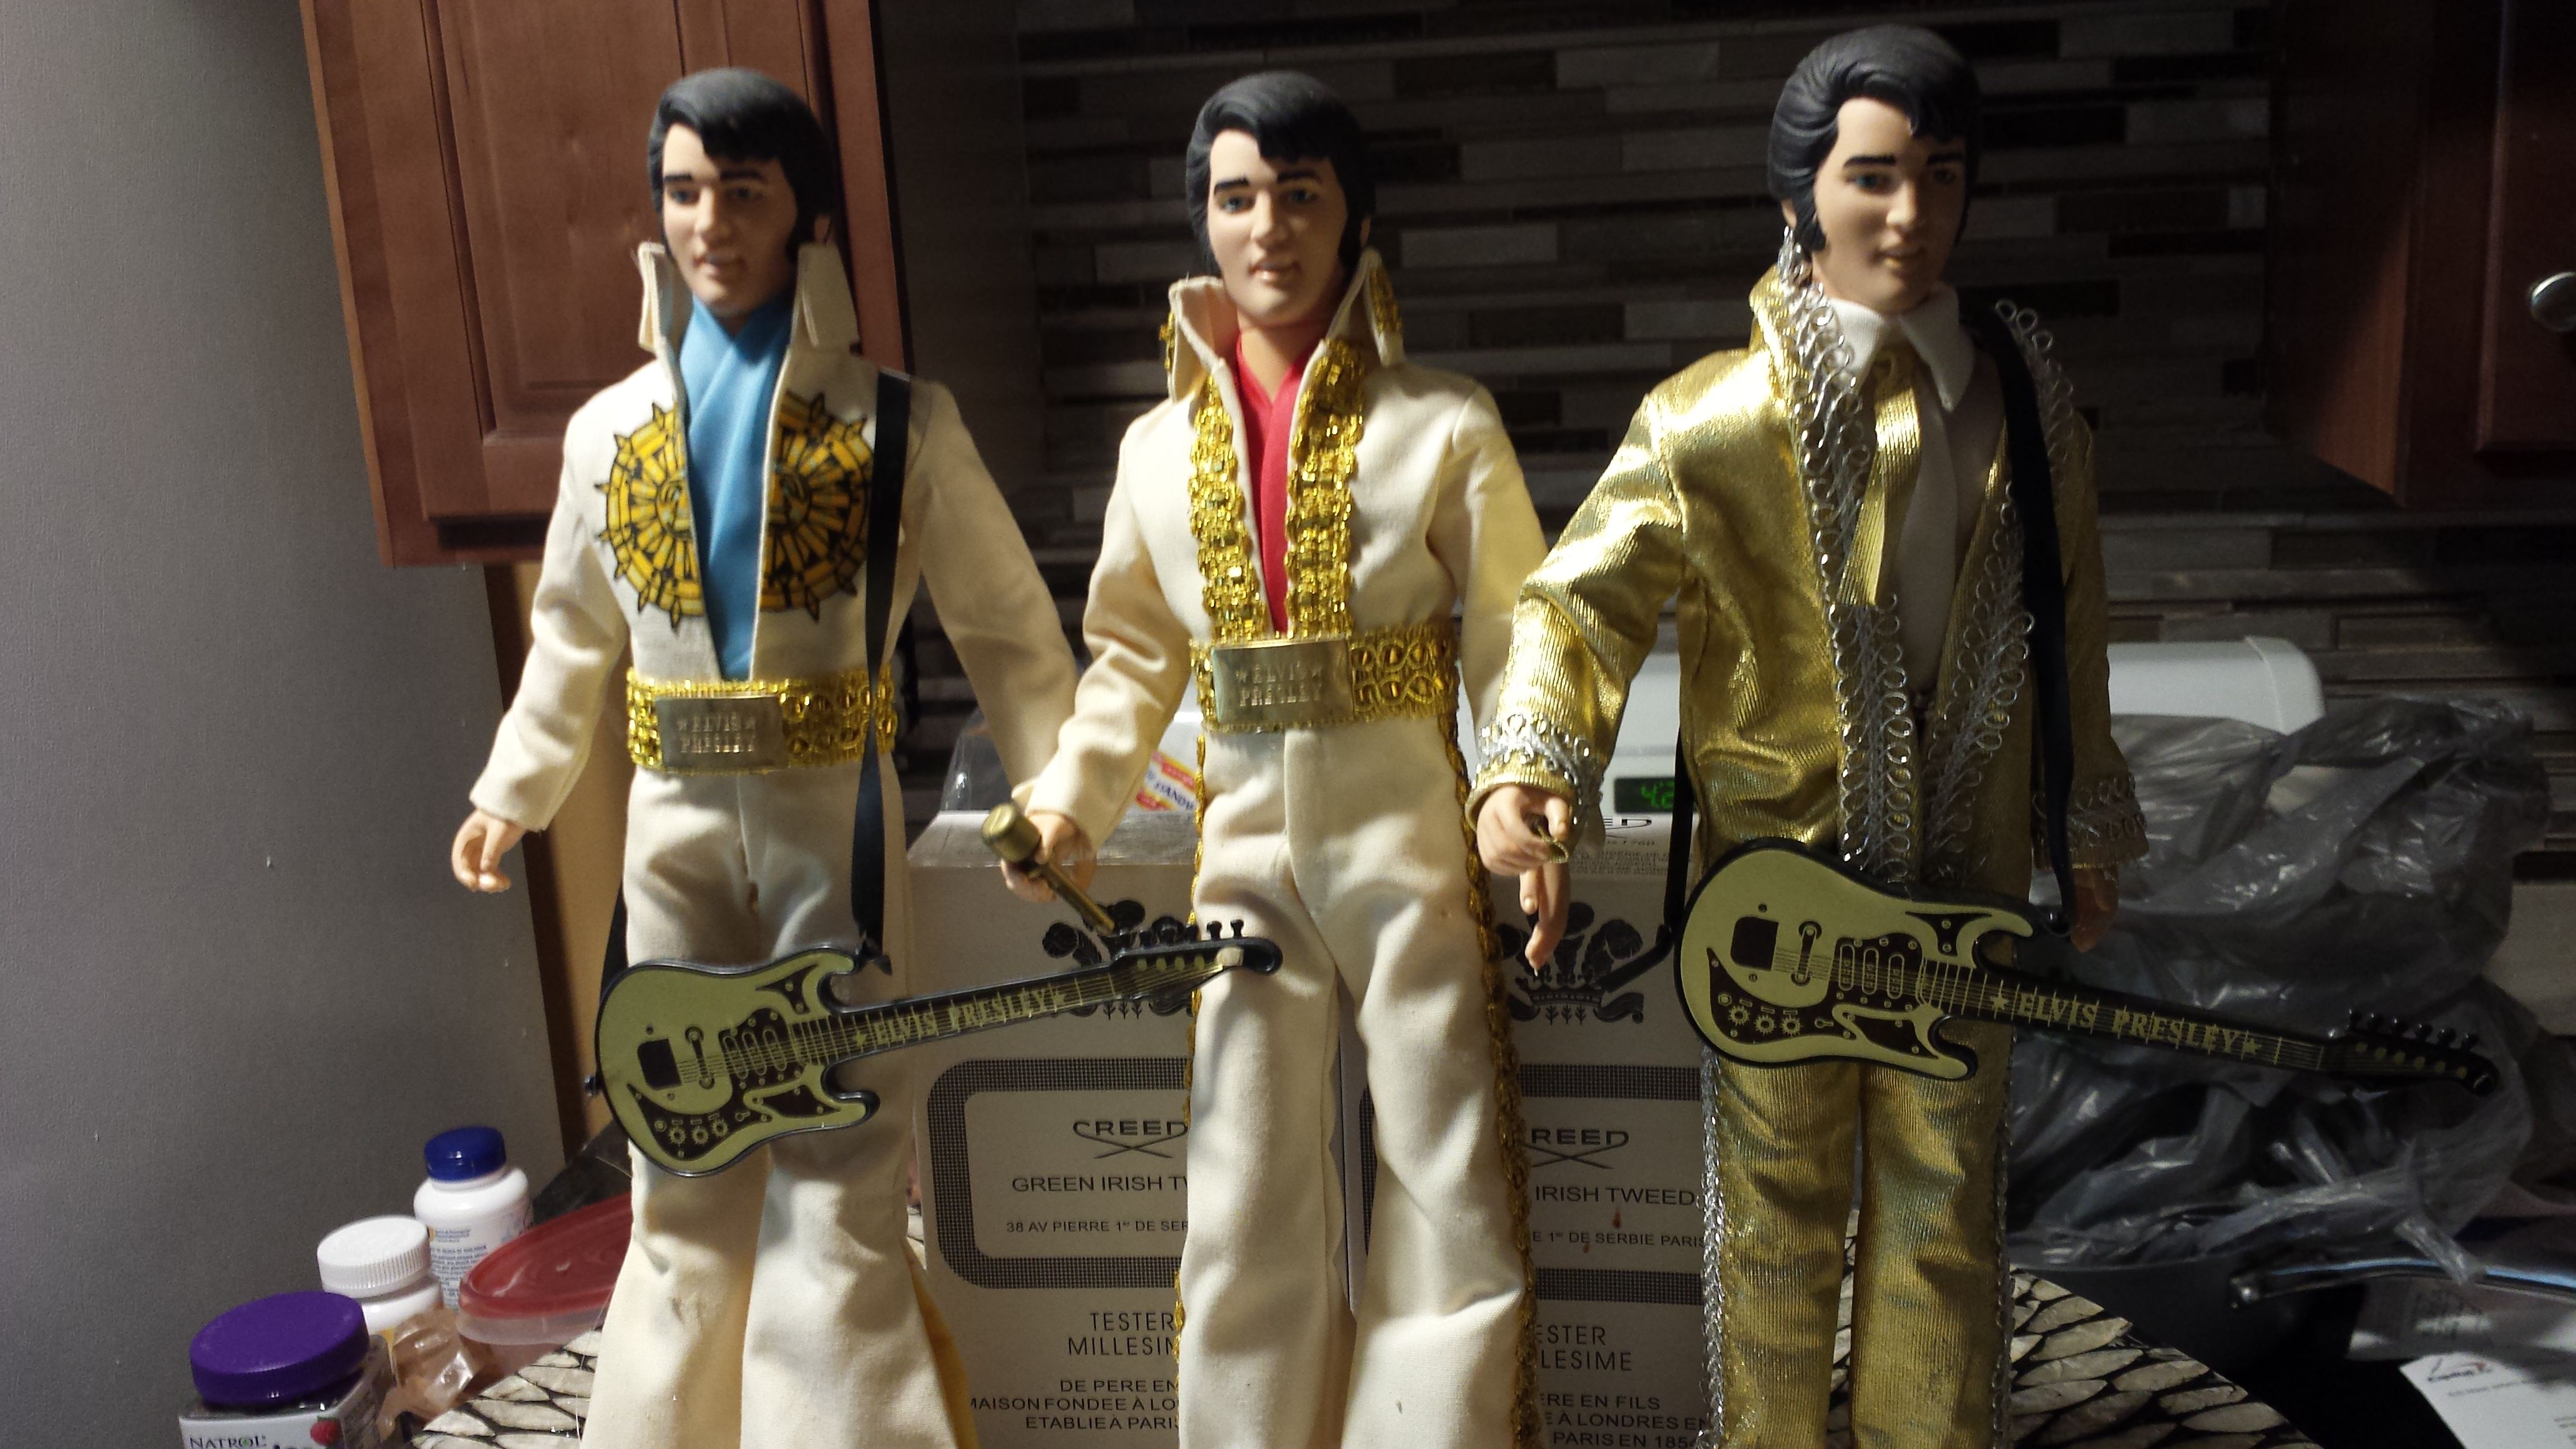 3 Elvis Presley Action Type Figures